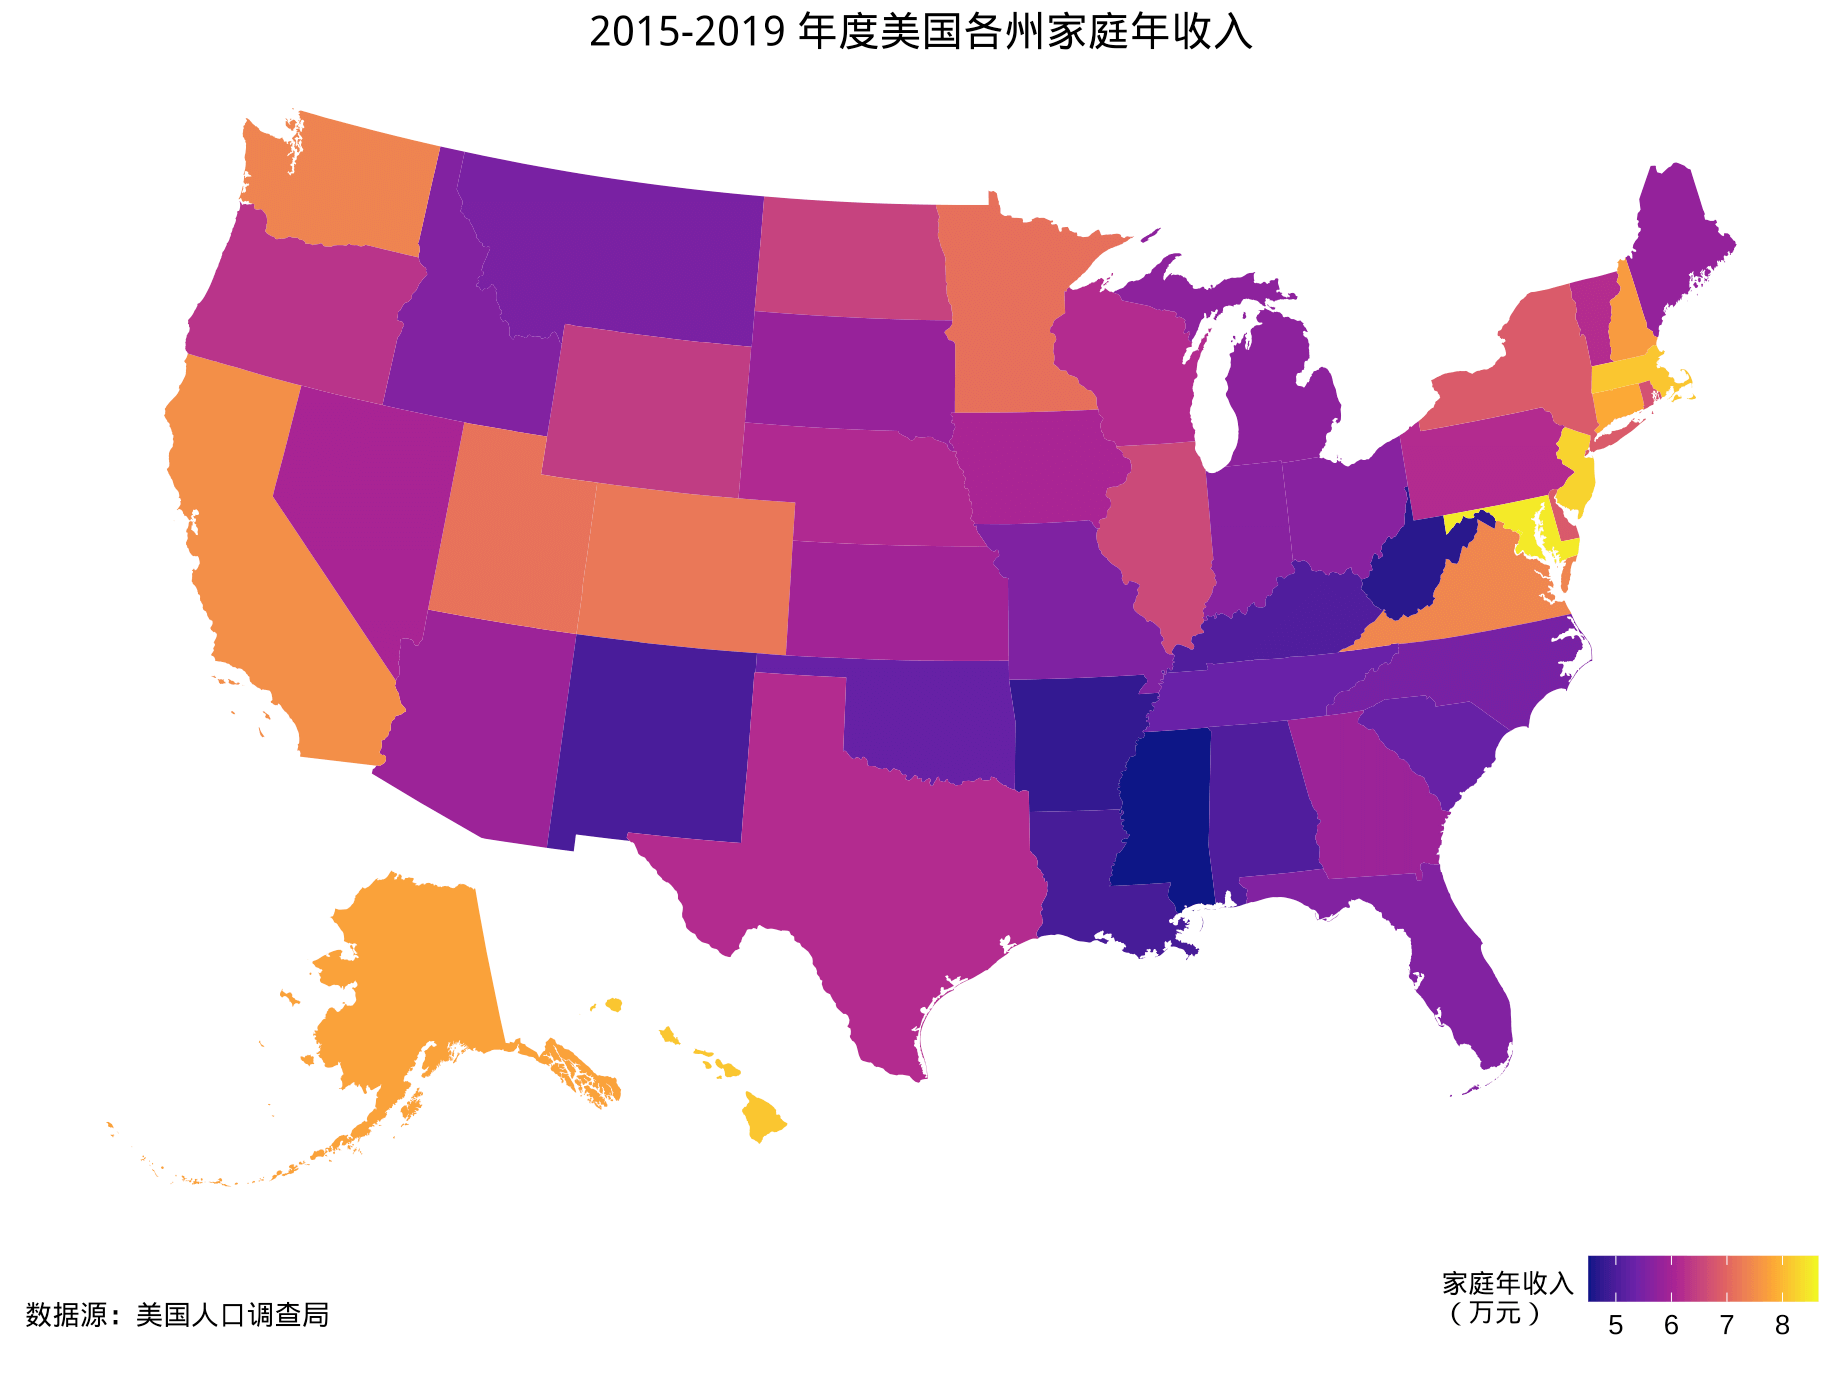 2015-2019 年度美国各个州家庭年收入